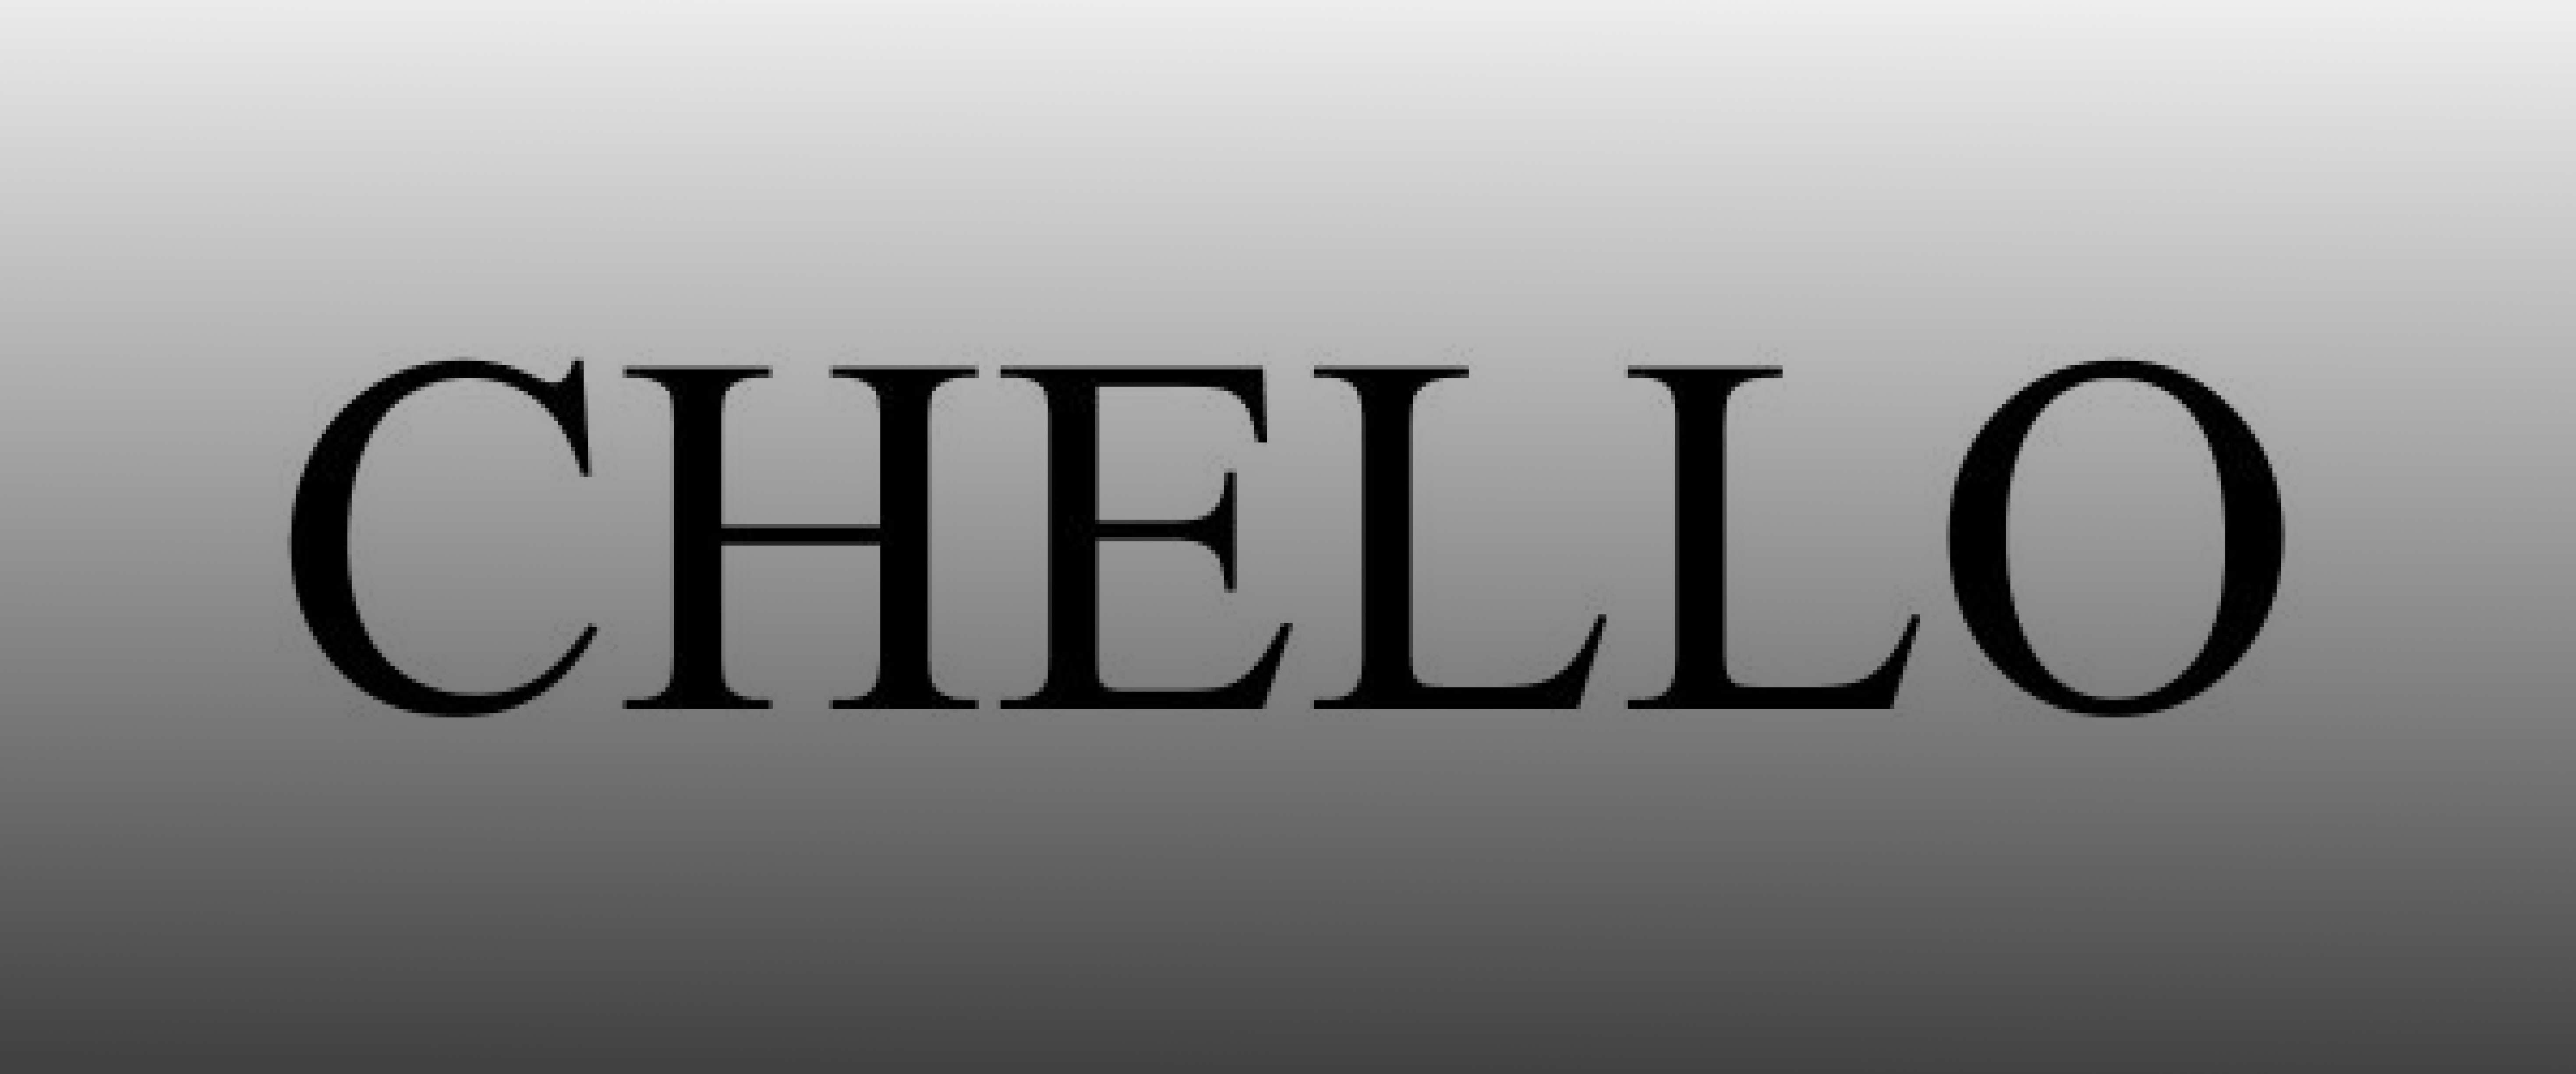 Chello case study banner image